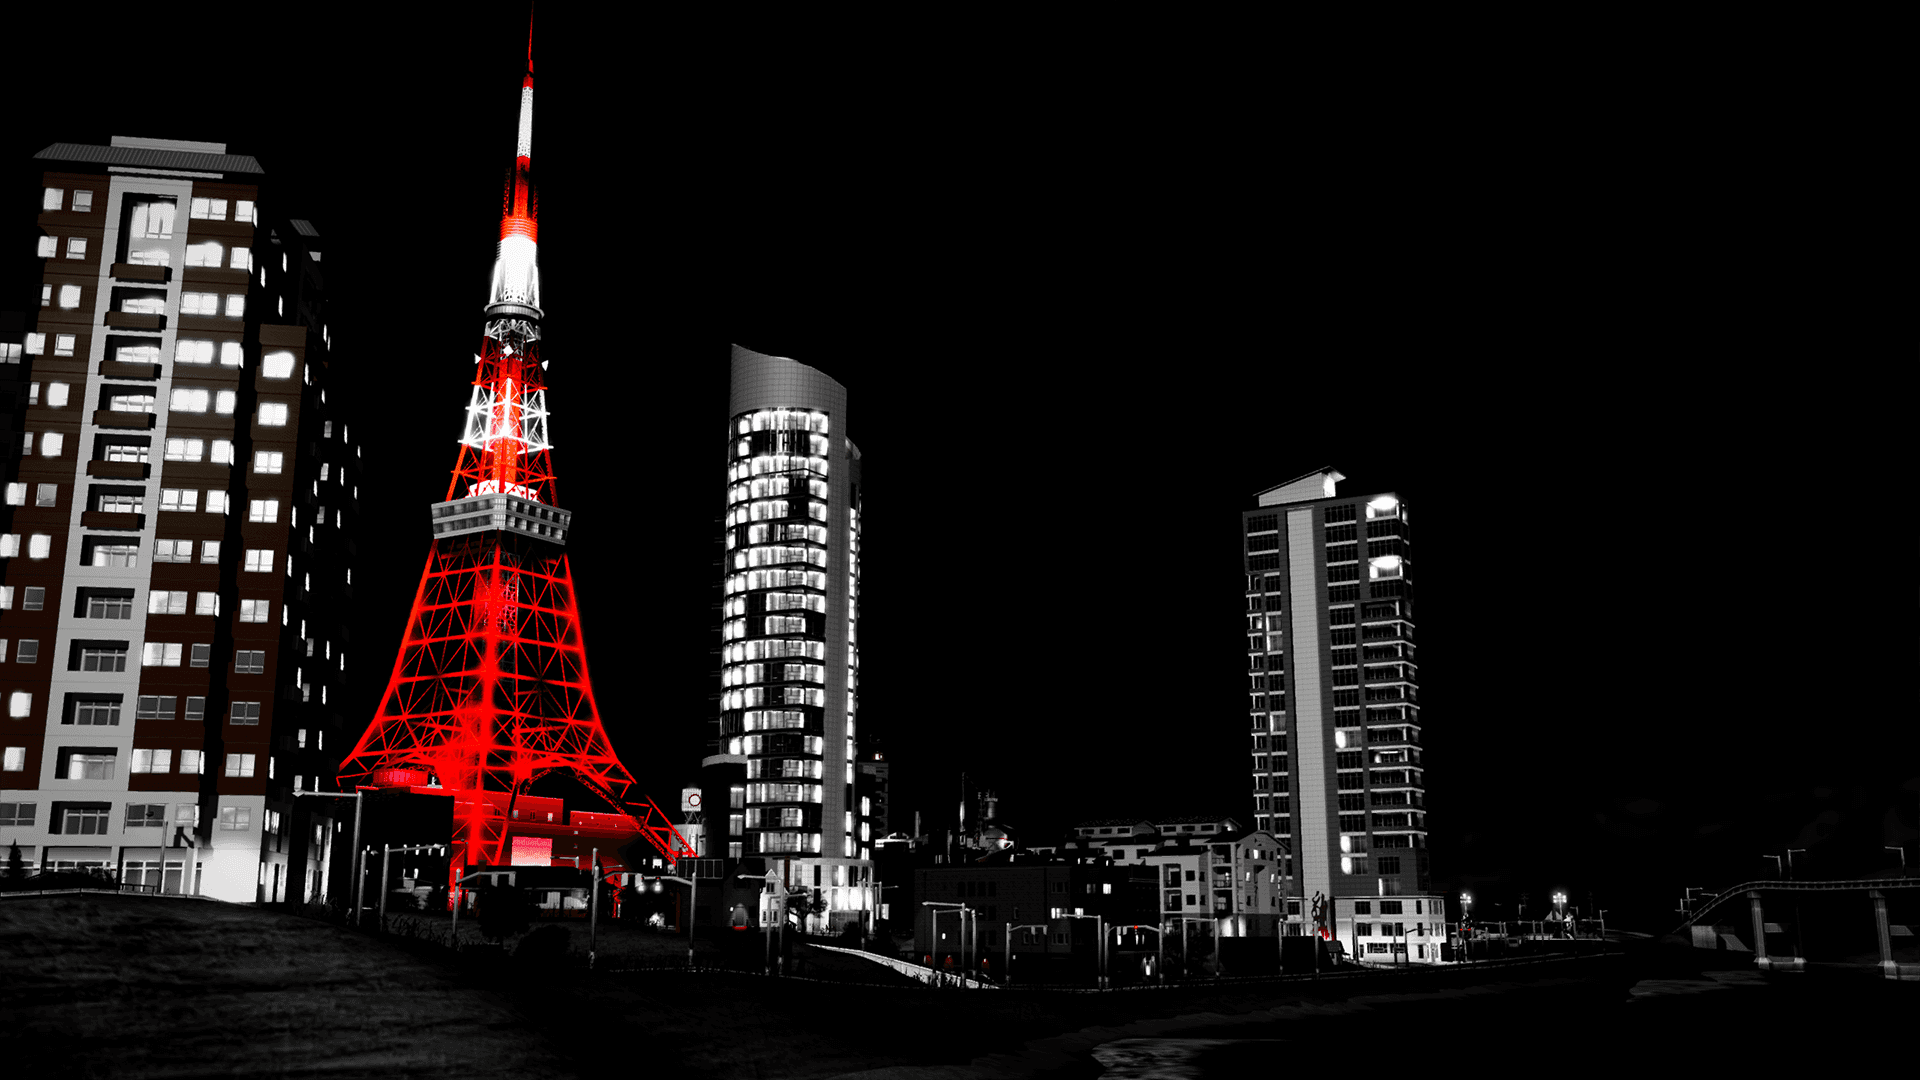 Hintergrundvon Tokio, Tokyo Tower, Rotes Licht.